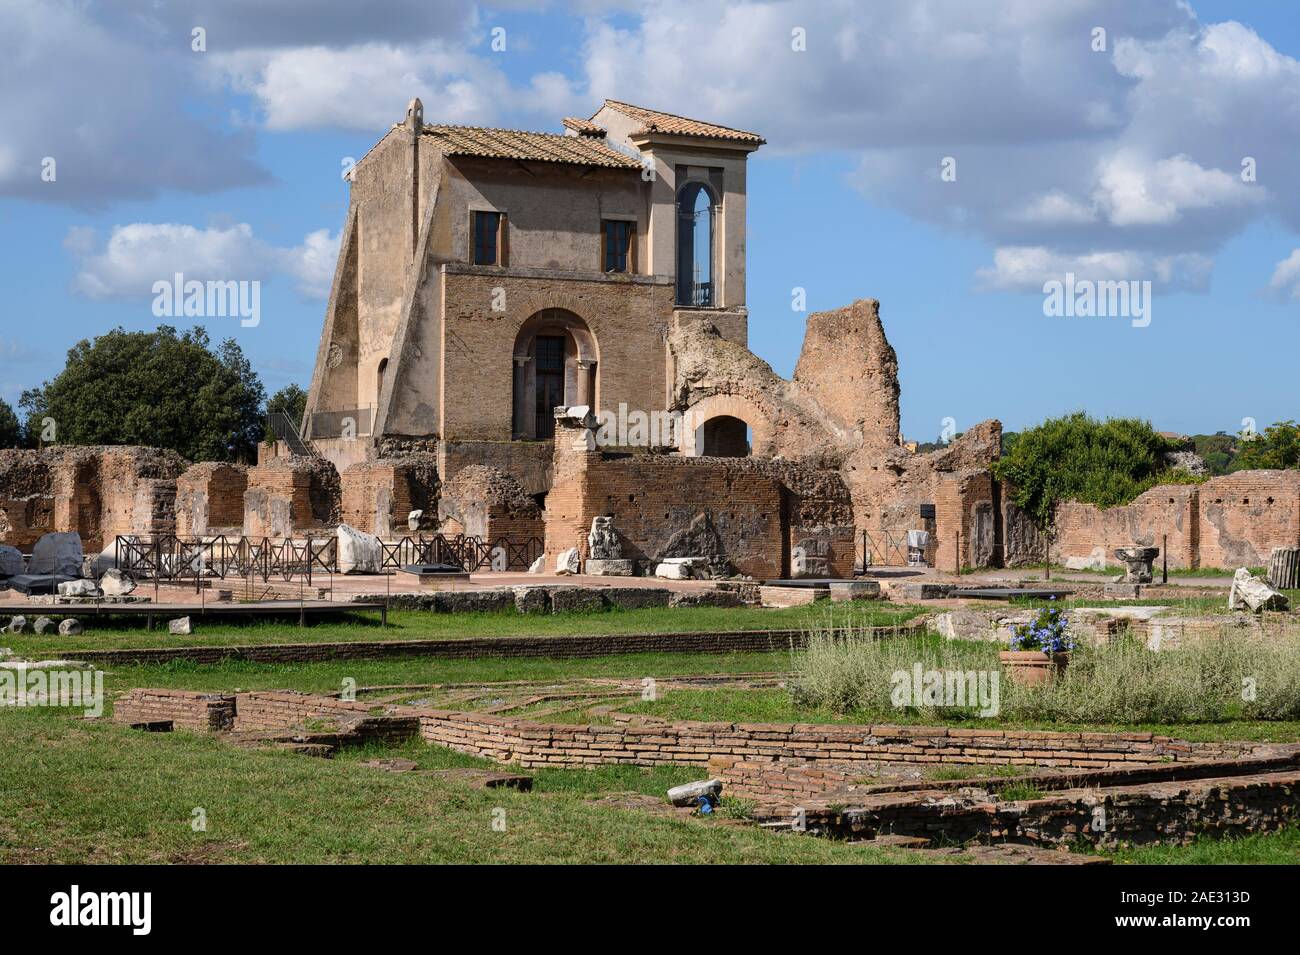 Rom. Italien. Der Casina Farnese und Reste der Domus Flavia (flavian Palace) auf dem Palatin. Ansicht zeigt das peristyl Garten und achteckige Stockfoto